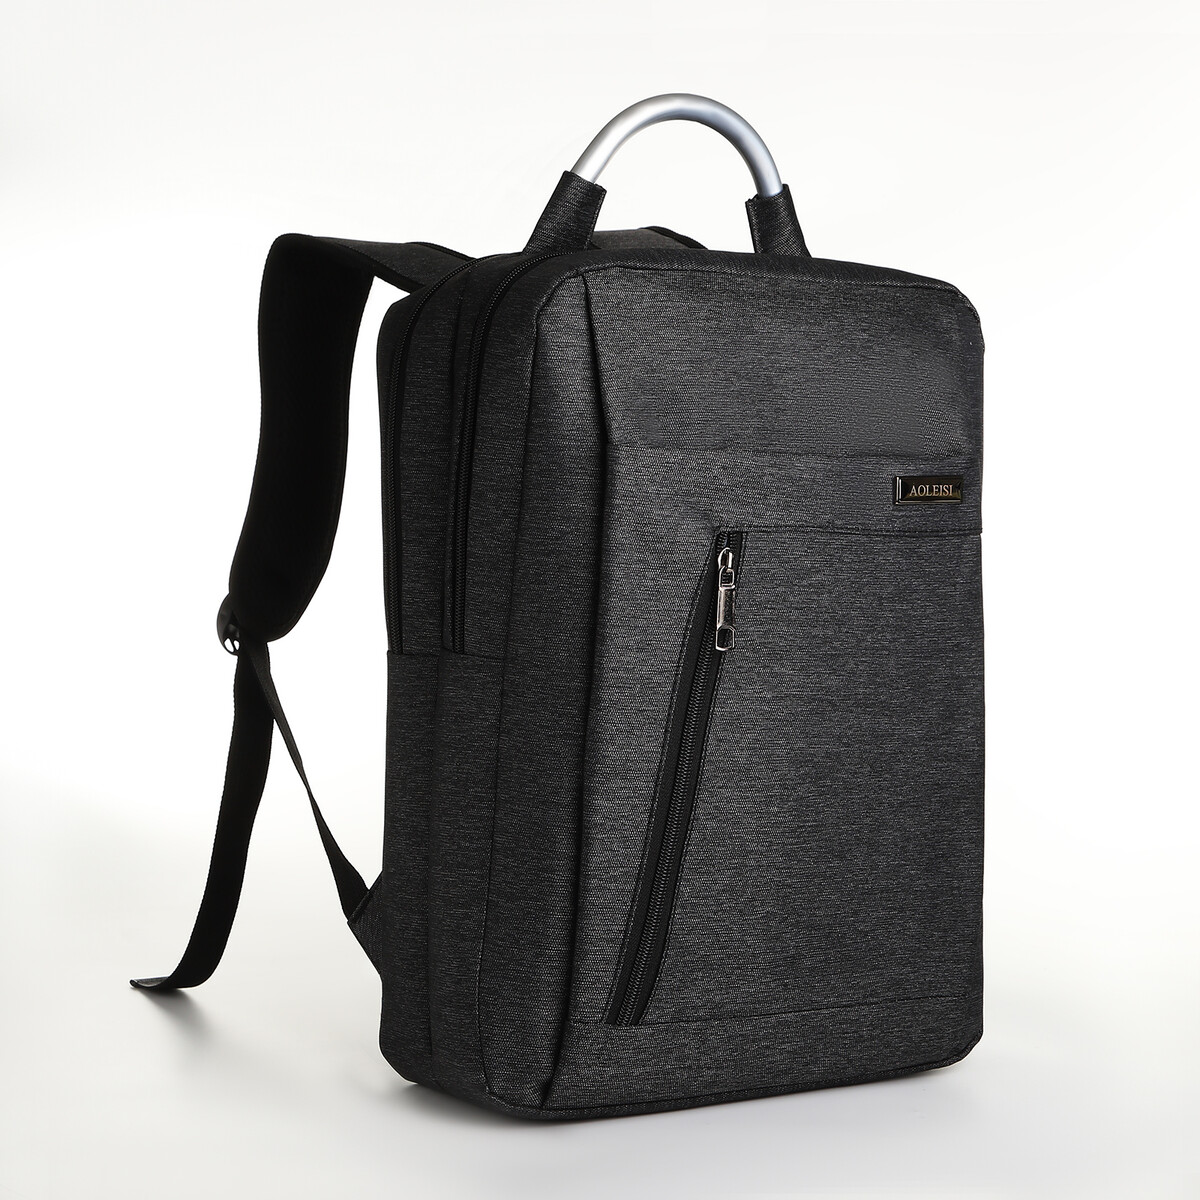 Рюкзак городской на молнии, 2 кармана, с usb, цвет черный